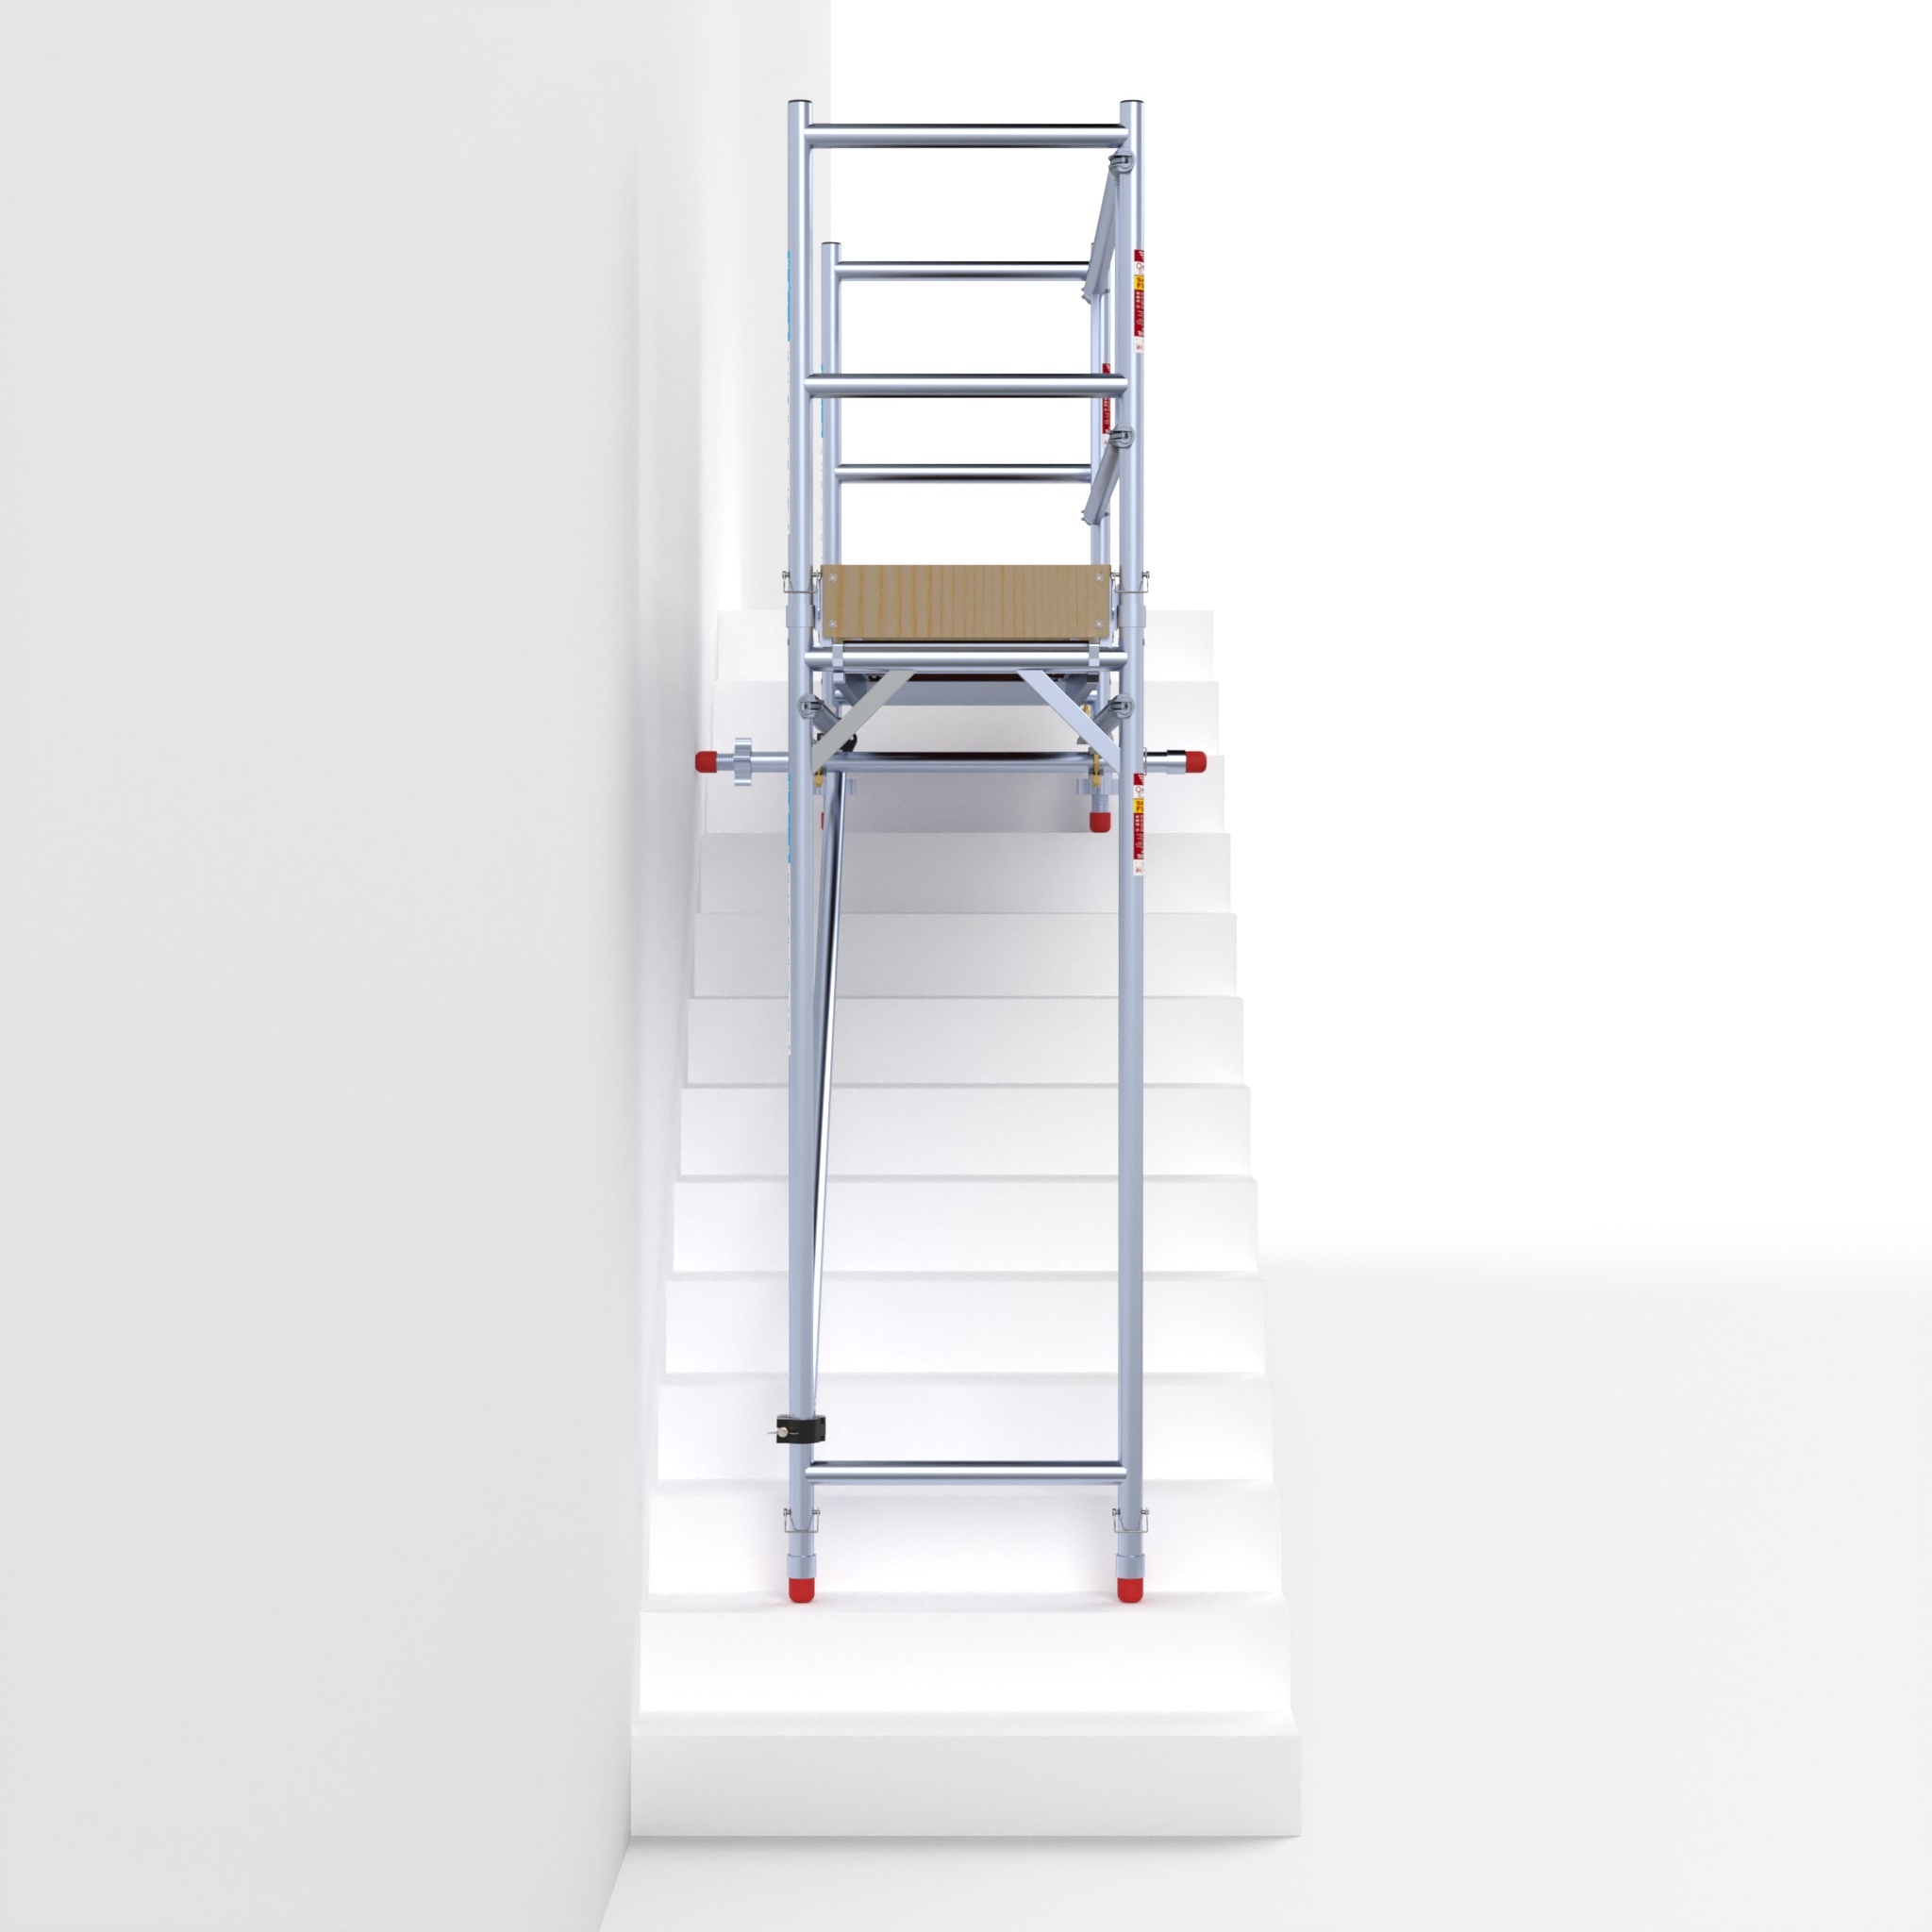 Echelle pour cage d'escalier aluminium coulissante 2 plans.